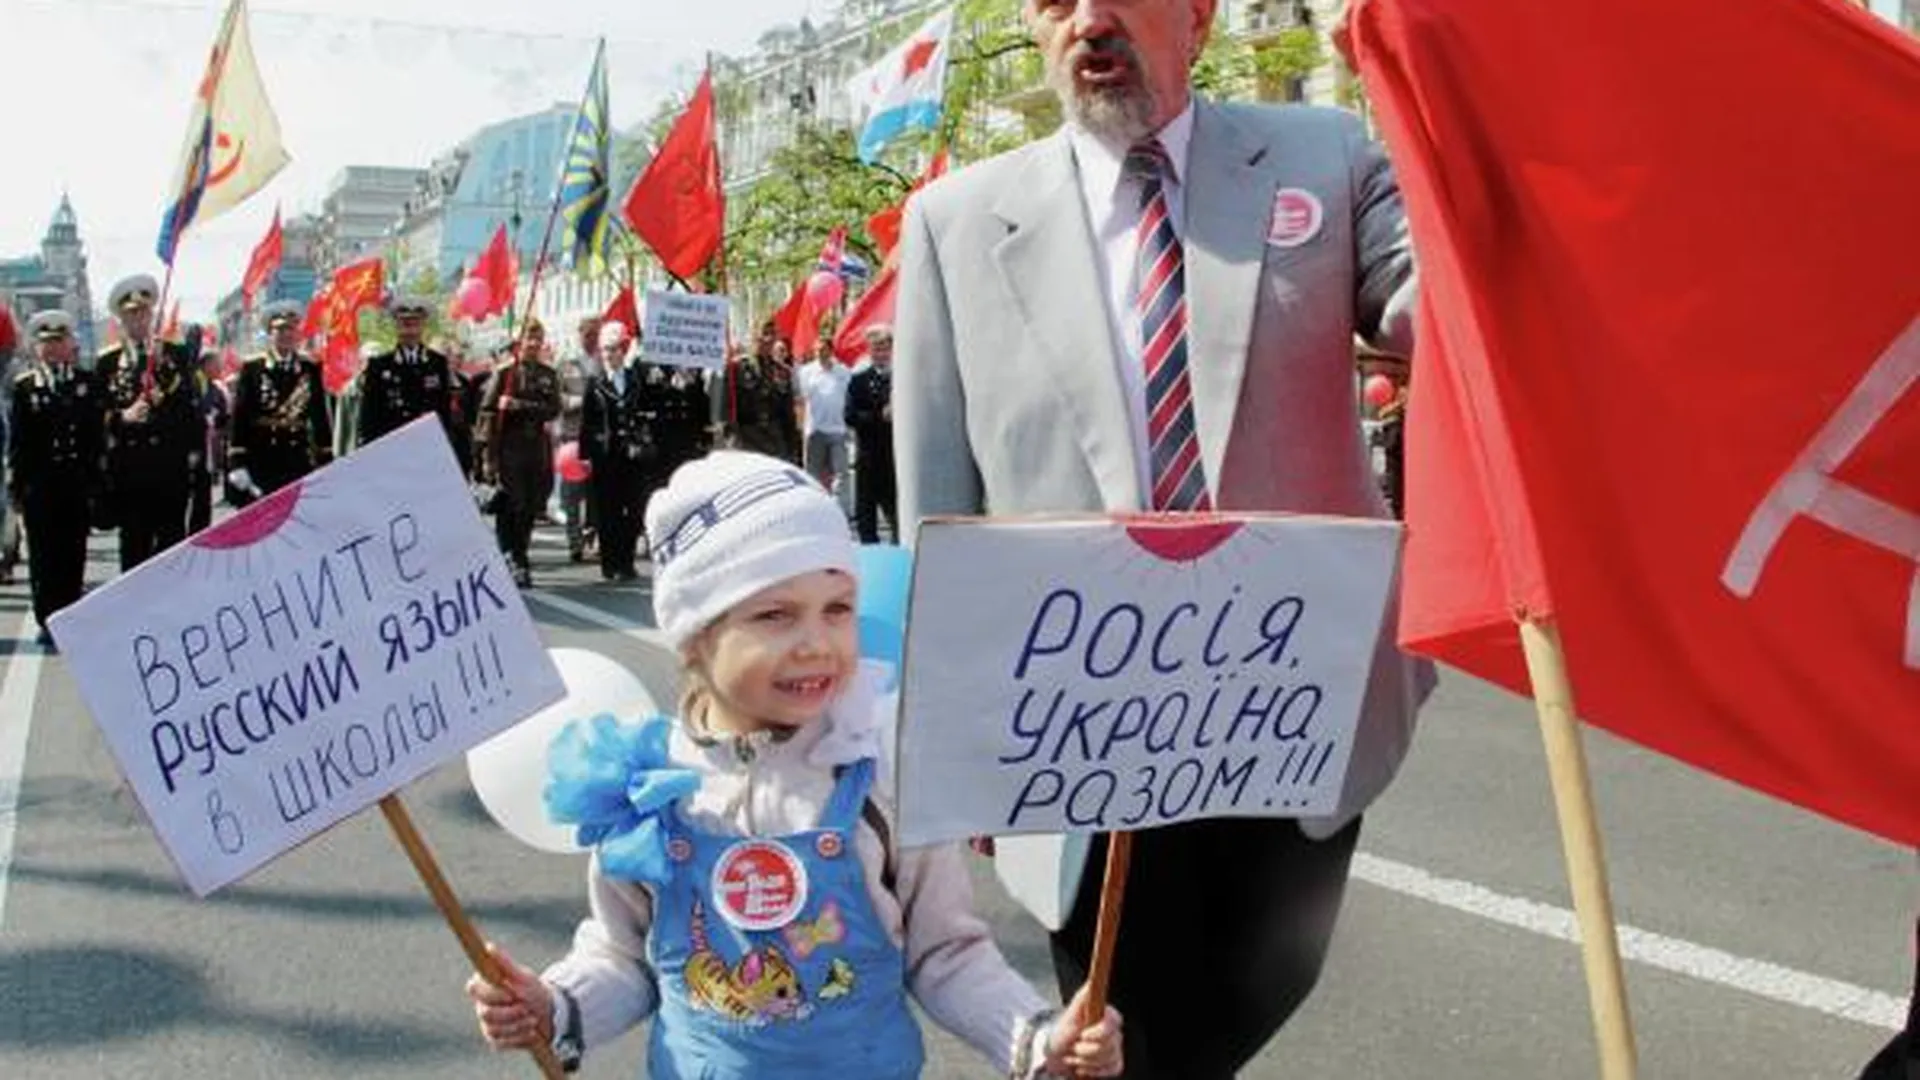 Представители Коммунистической партии Украины принимают участие в демонстрации, посвященной Международному дню солидарности трудящихся, 2011 год